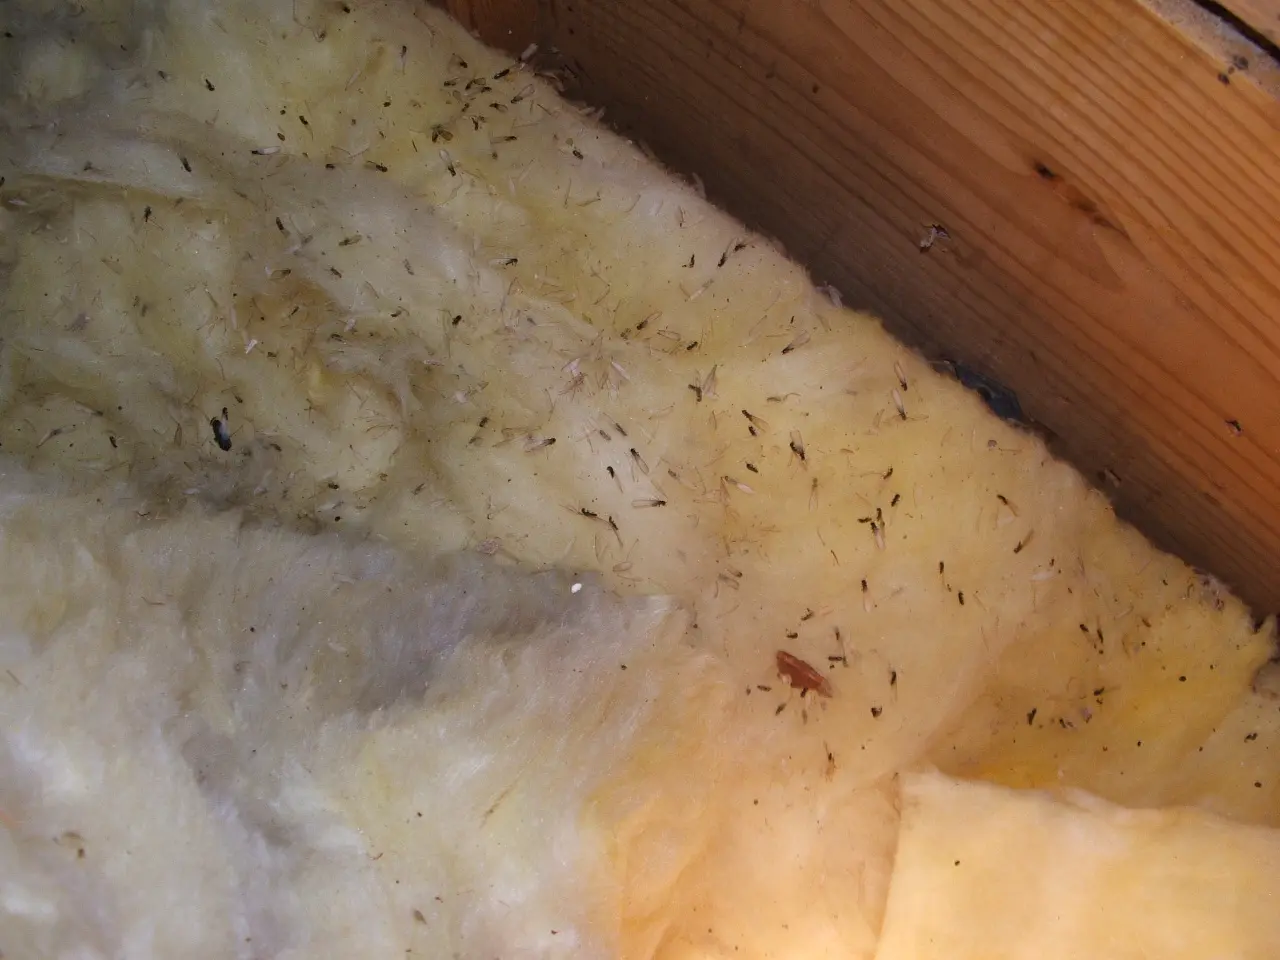 Termites in insulation